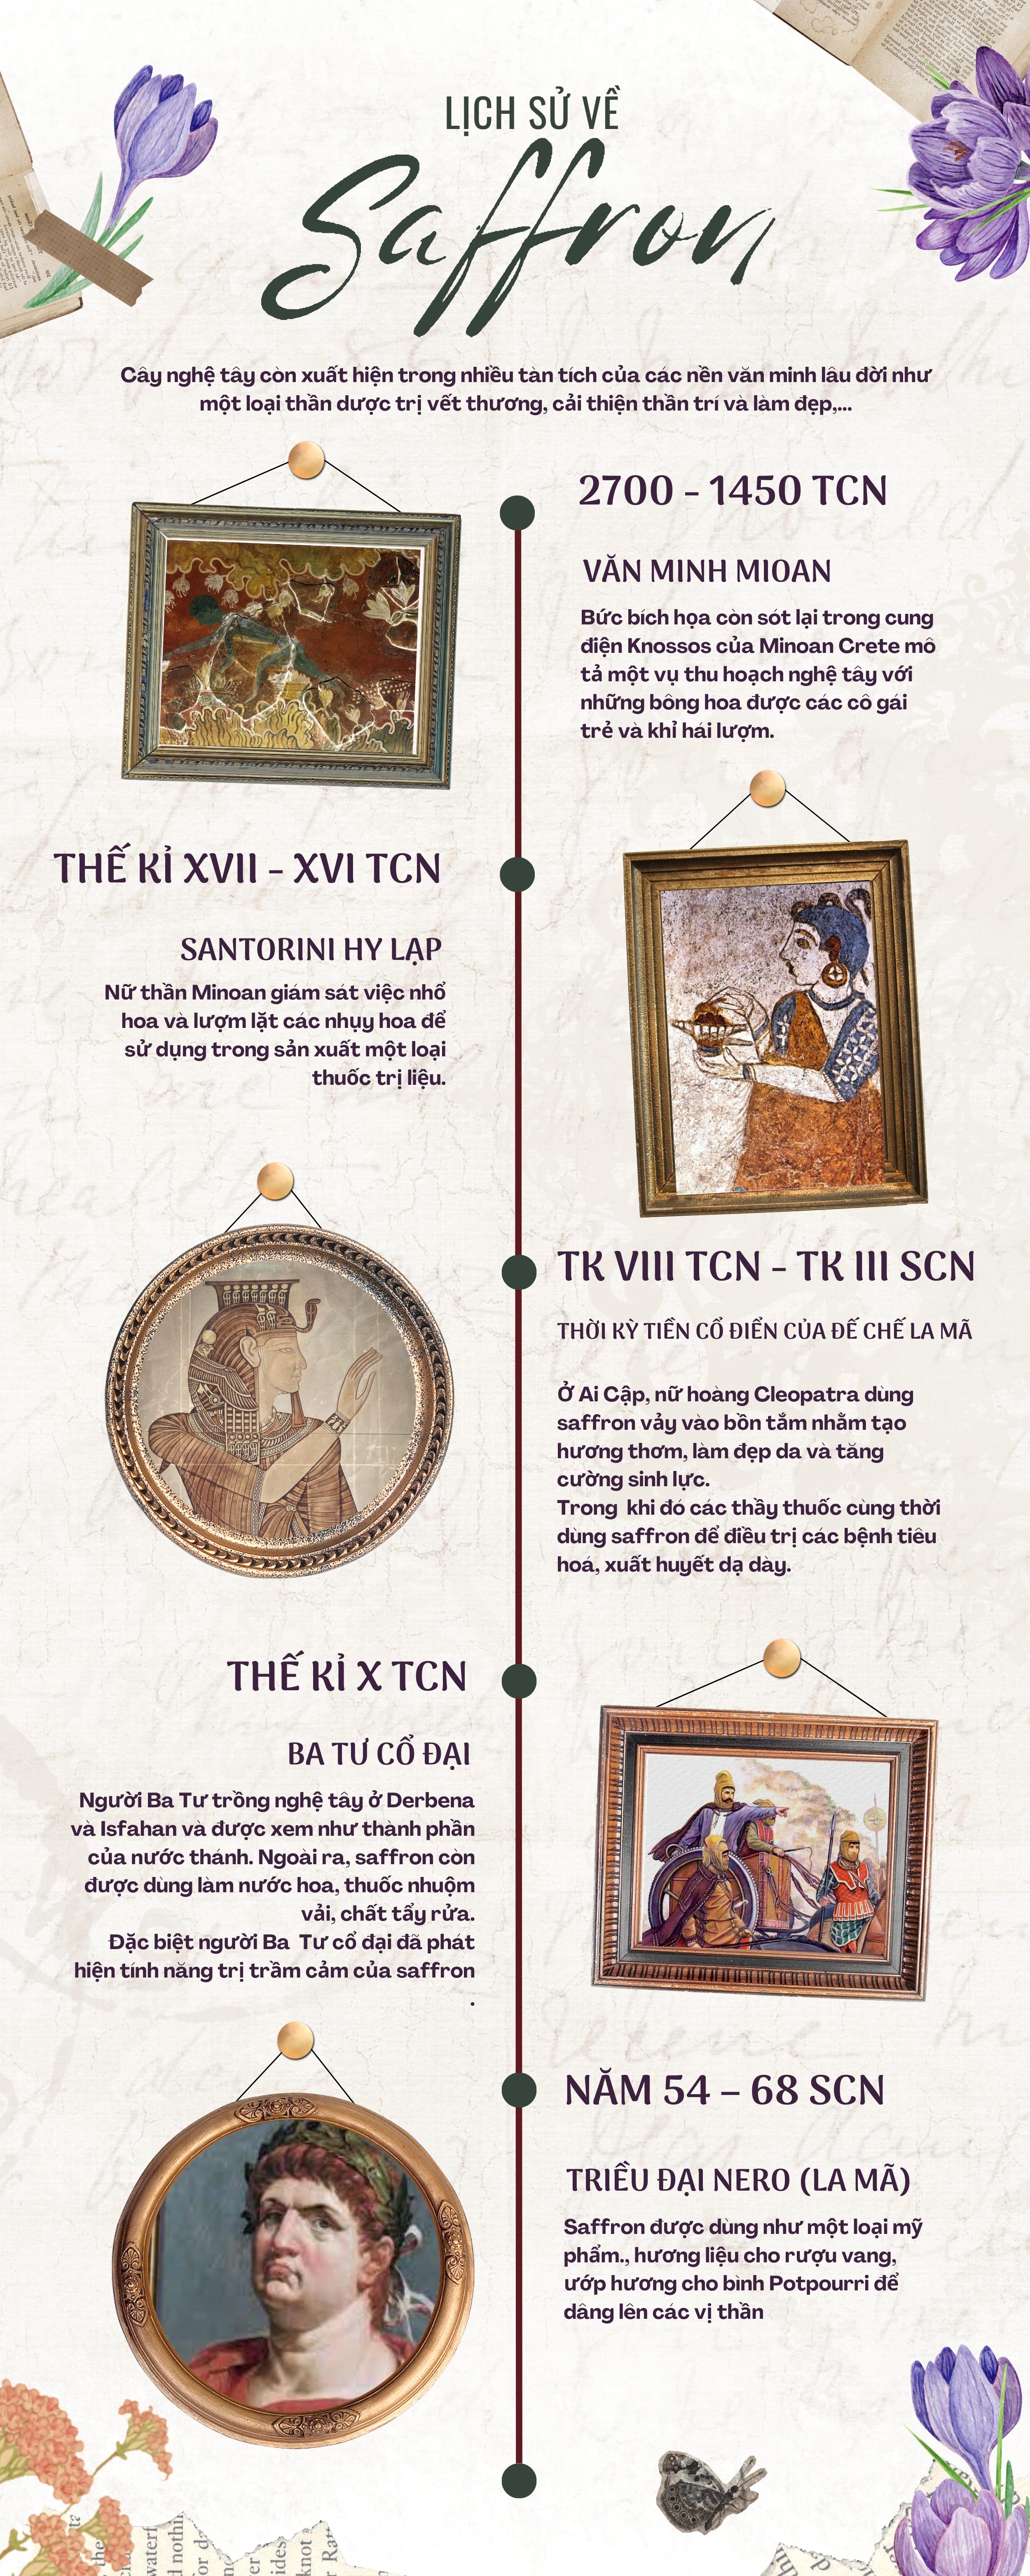 Công dụng của Saffron qua từng giai đoạn lịch sử